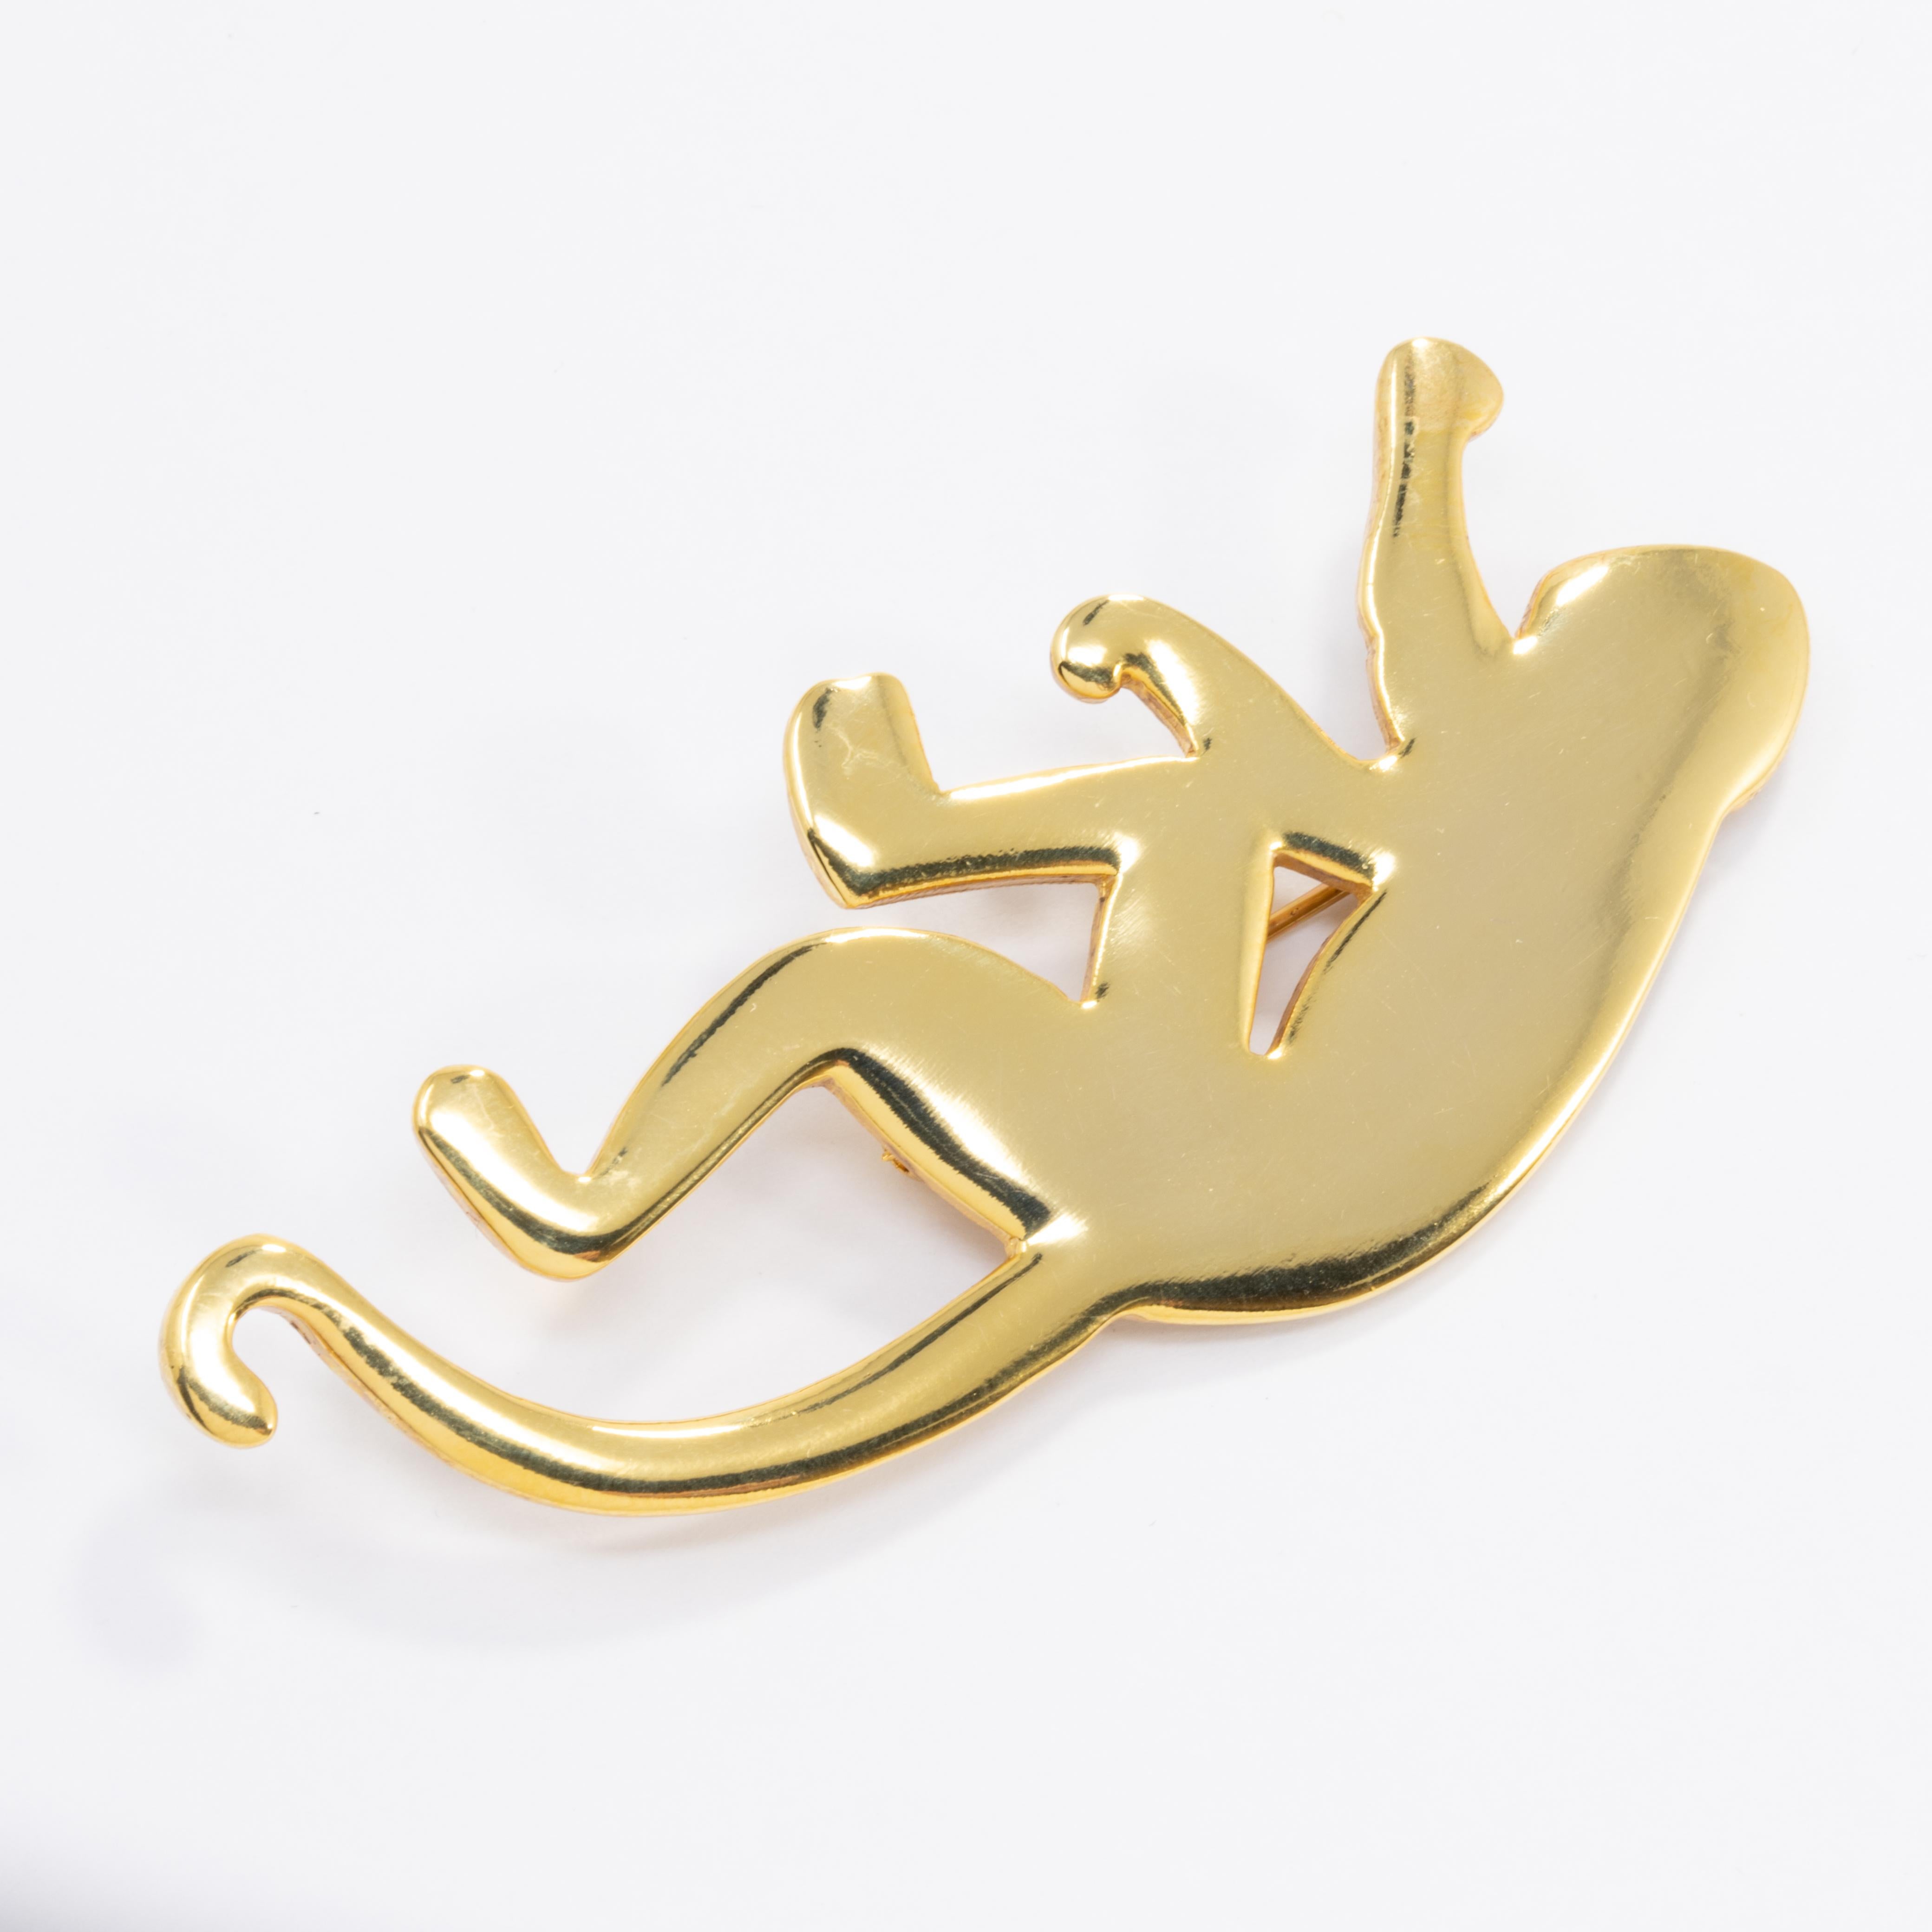 Die Affenbrosche von Oscar de la Renta aus goldfarbenem Messing. Eine perfekte Ergänzung für jeden Stil!

Markenzeichen: Oscar de la Renta, Hergestellt in den USA